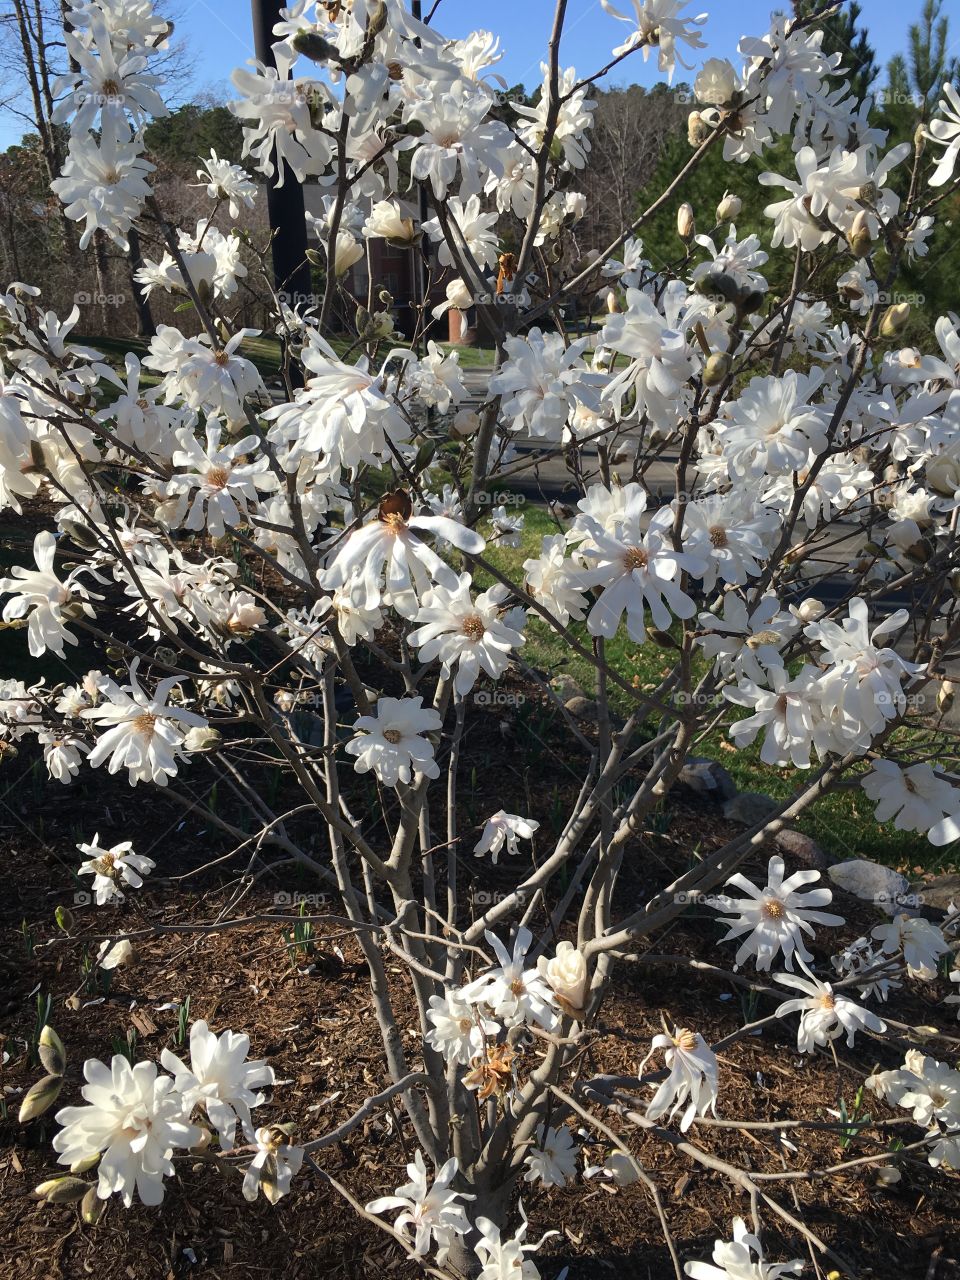 Hybrid magnolia 